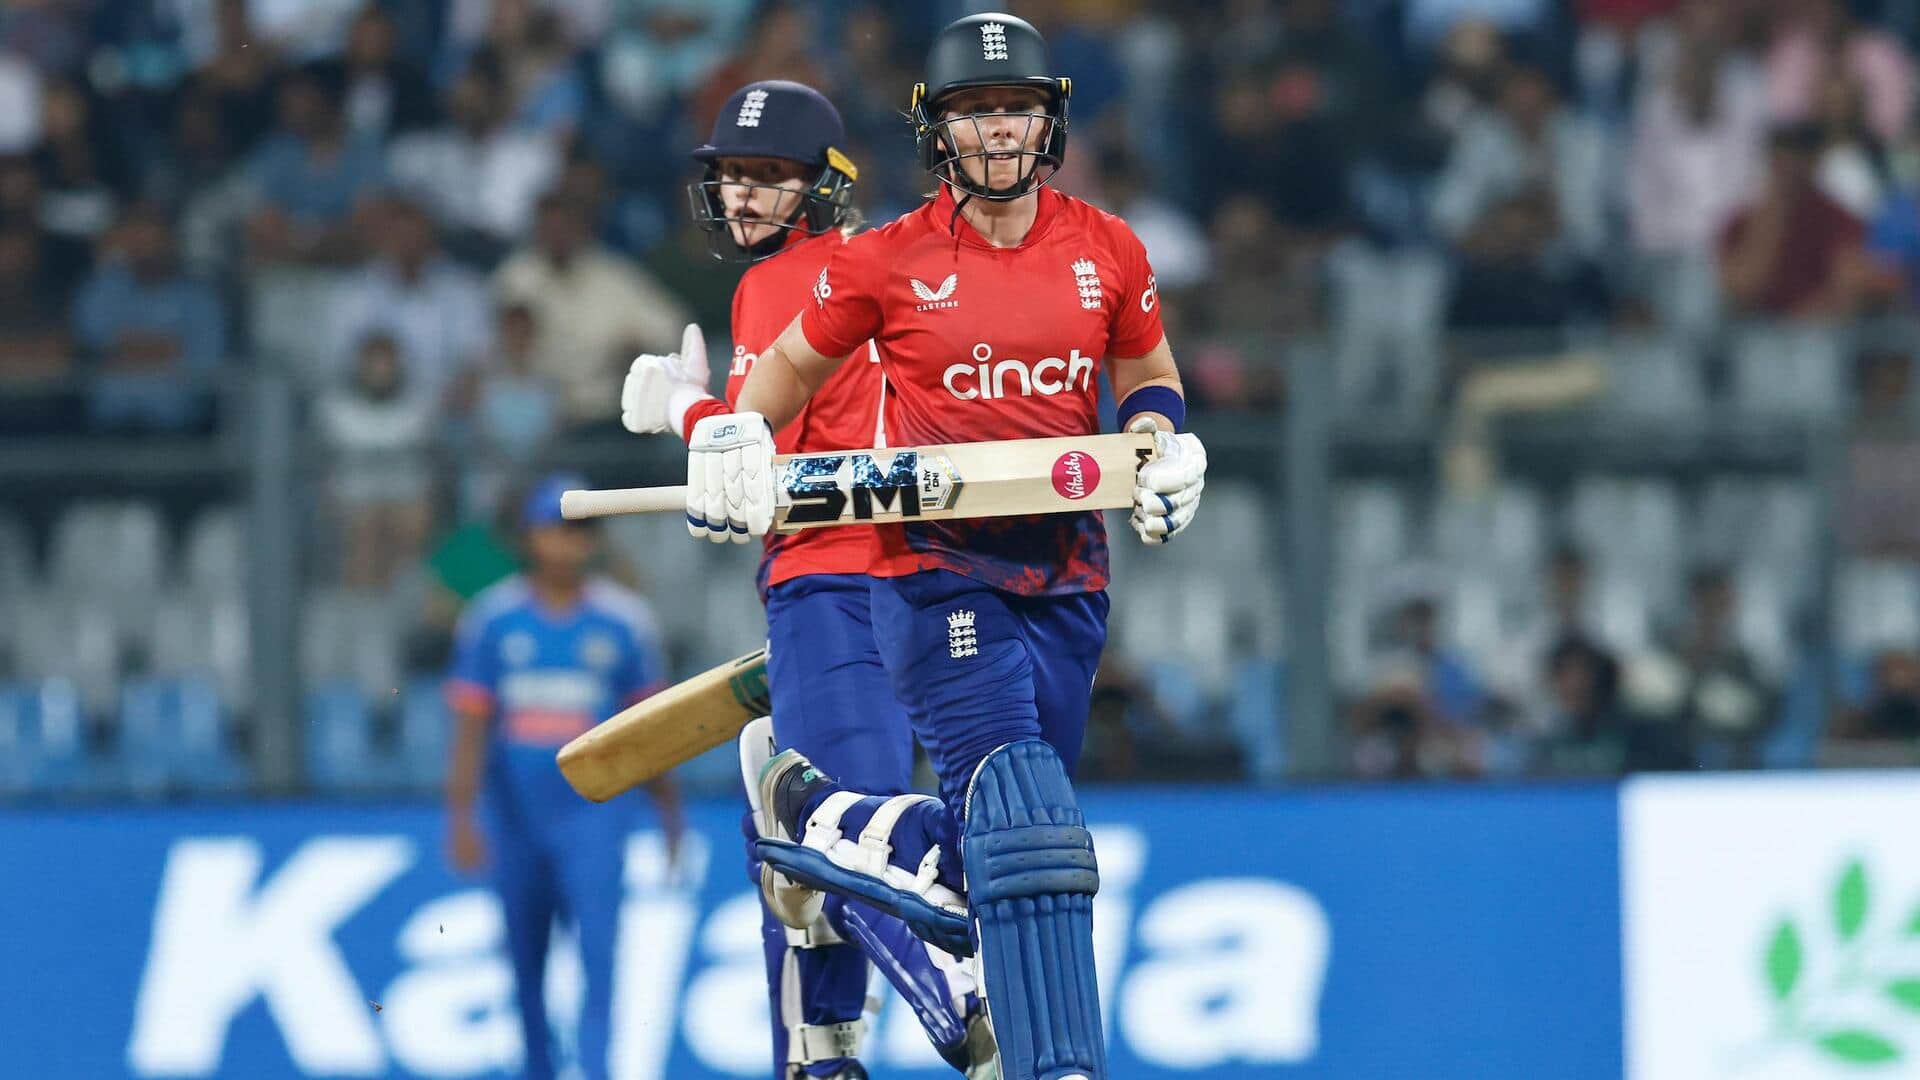 भारत बनाम इंग्लैंड: हीथर नाइट ने लगाया टी-20 अंतरराष्ट्रीय करियर का 5वां अर्धशतक, जानिए उनके आंकड़े